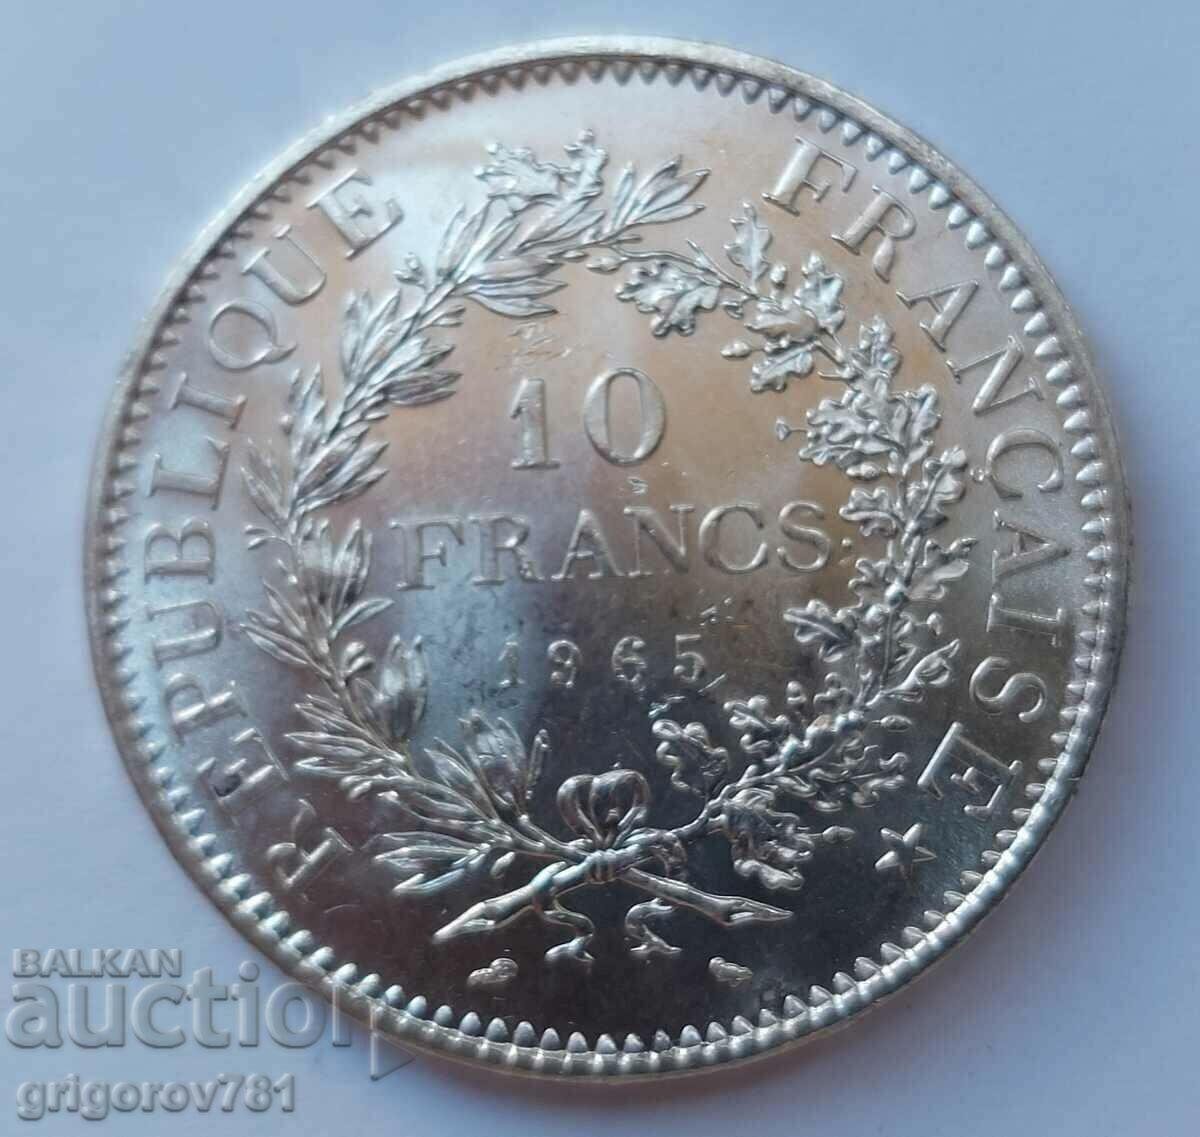 Ασημένιο 10 φράγκων Γαλλία 1965 - ασημένιο νόμισμα # 3